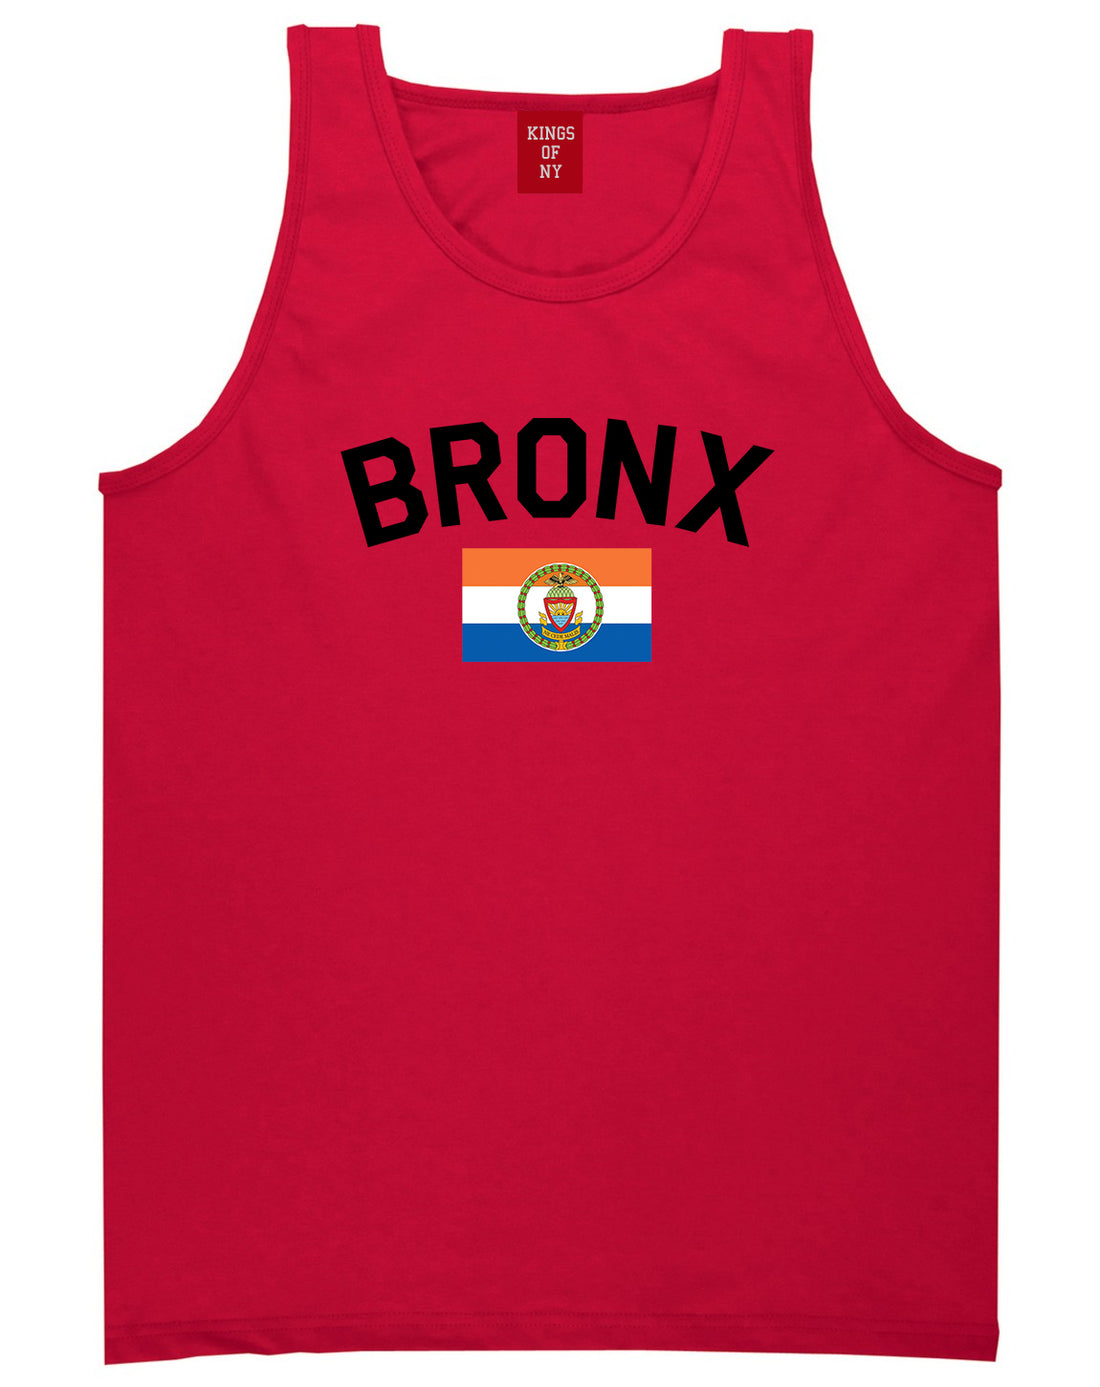 Bronx Flag Mens Tank Top Shirt Red